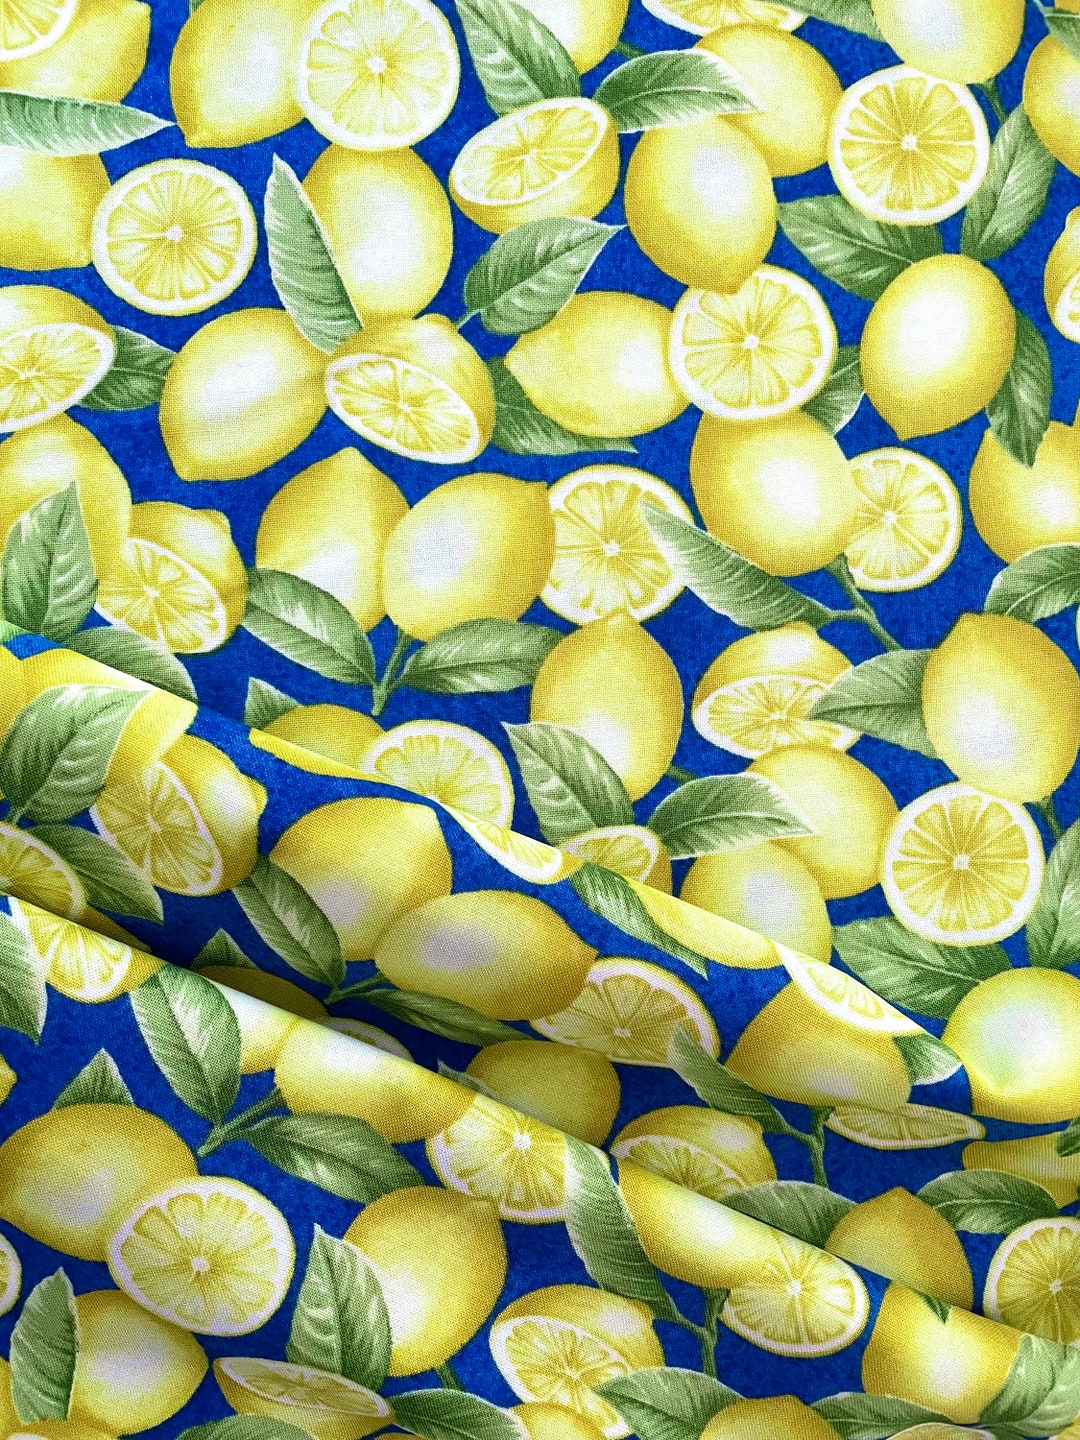 Just Lemons 9345 Lemons Blue Yellow Jane Shasky for Henry - Etsy